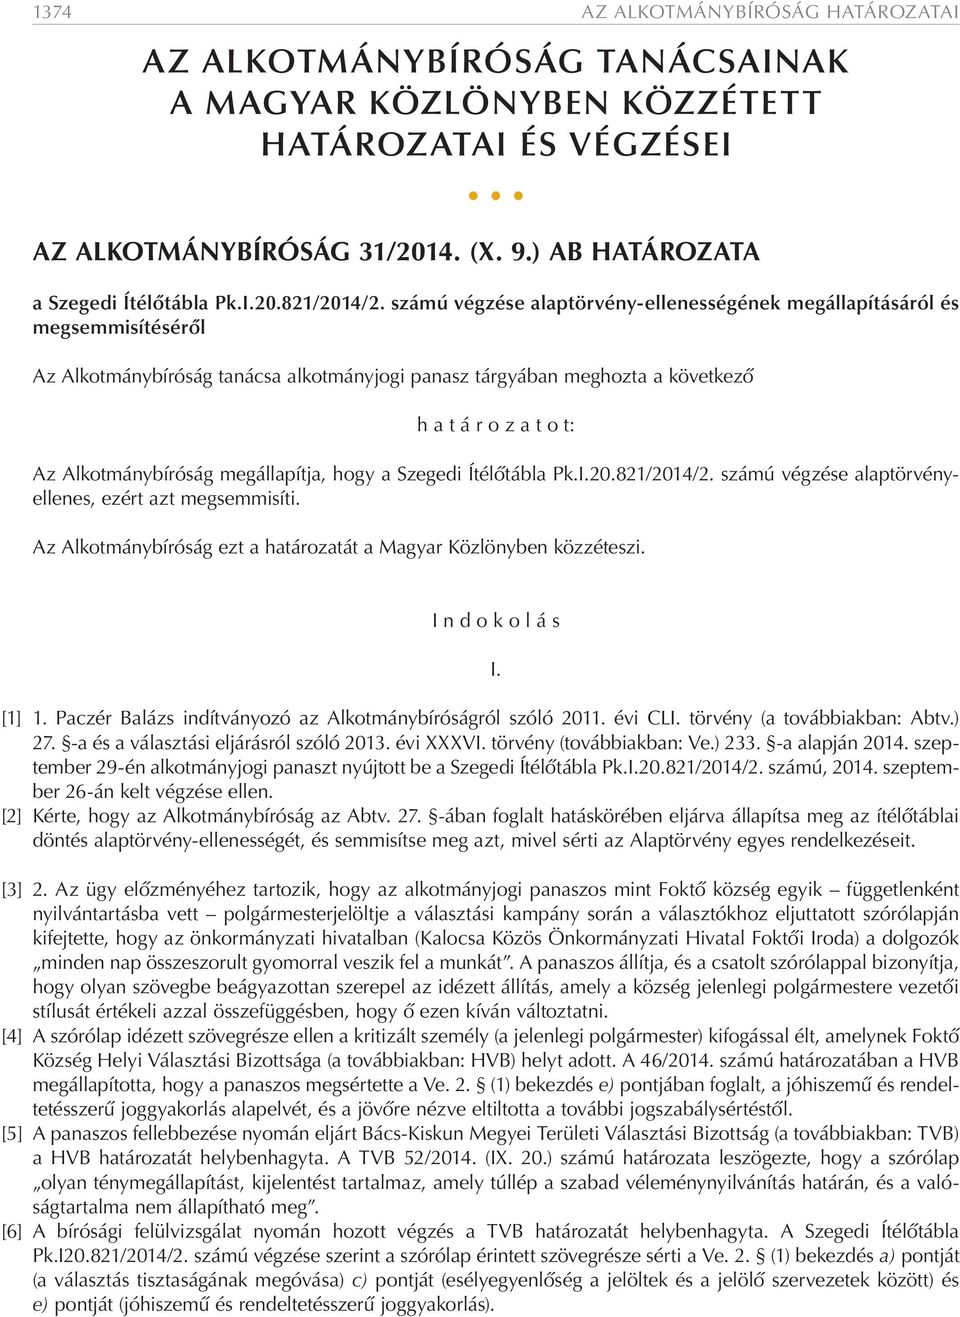 Alkotmánybíróság megállapítja, hogy a Szegedi Ítélőtábla Pk.I.20.821/2014/2. számú végzése alaptörvényellenes, ezért azt megsemmisíti.